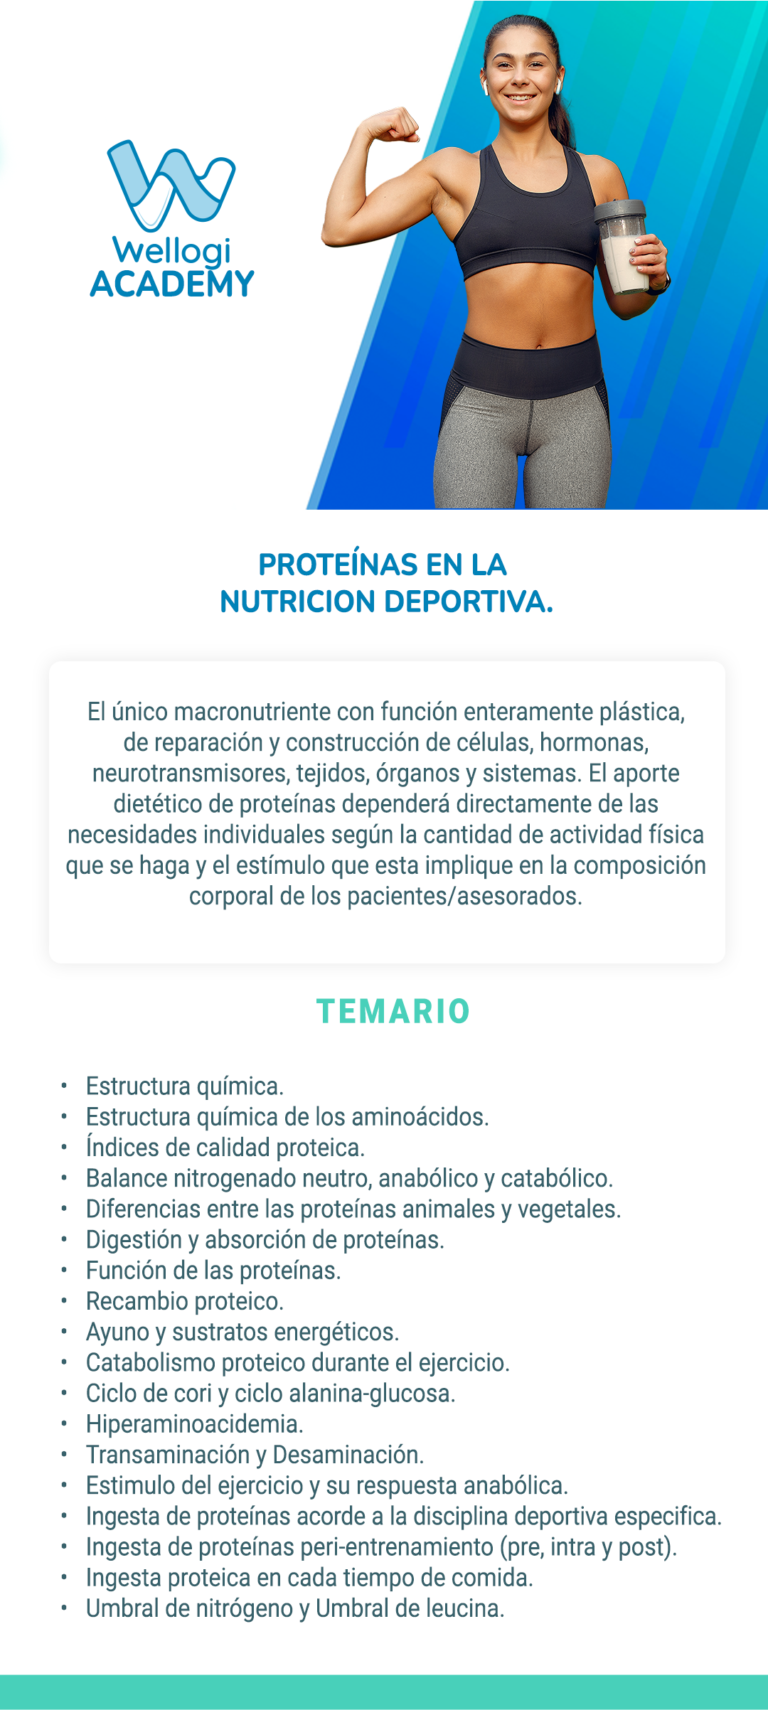 Temario de Proteínas en la Nutricion Deportiva